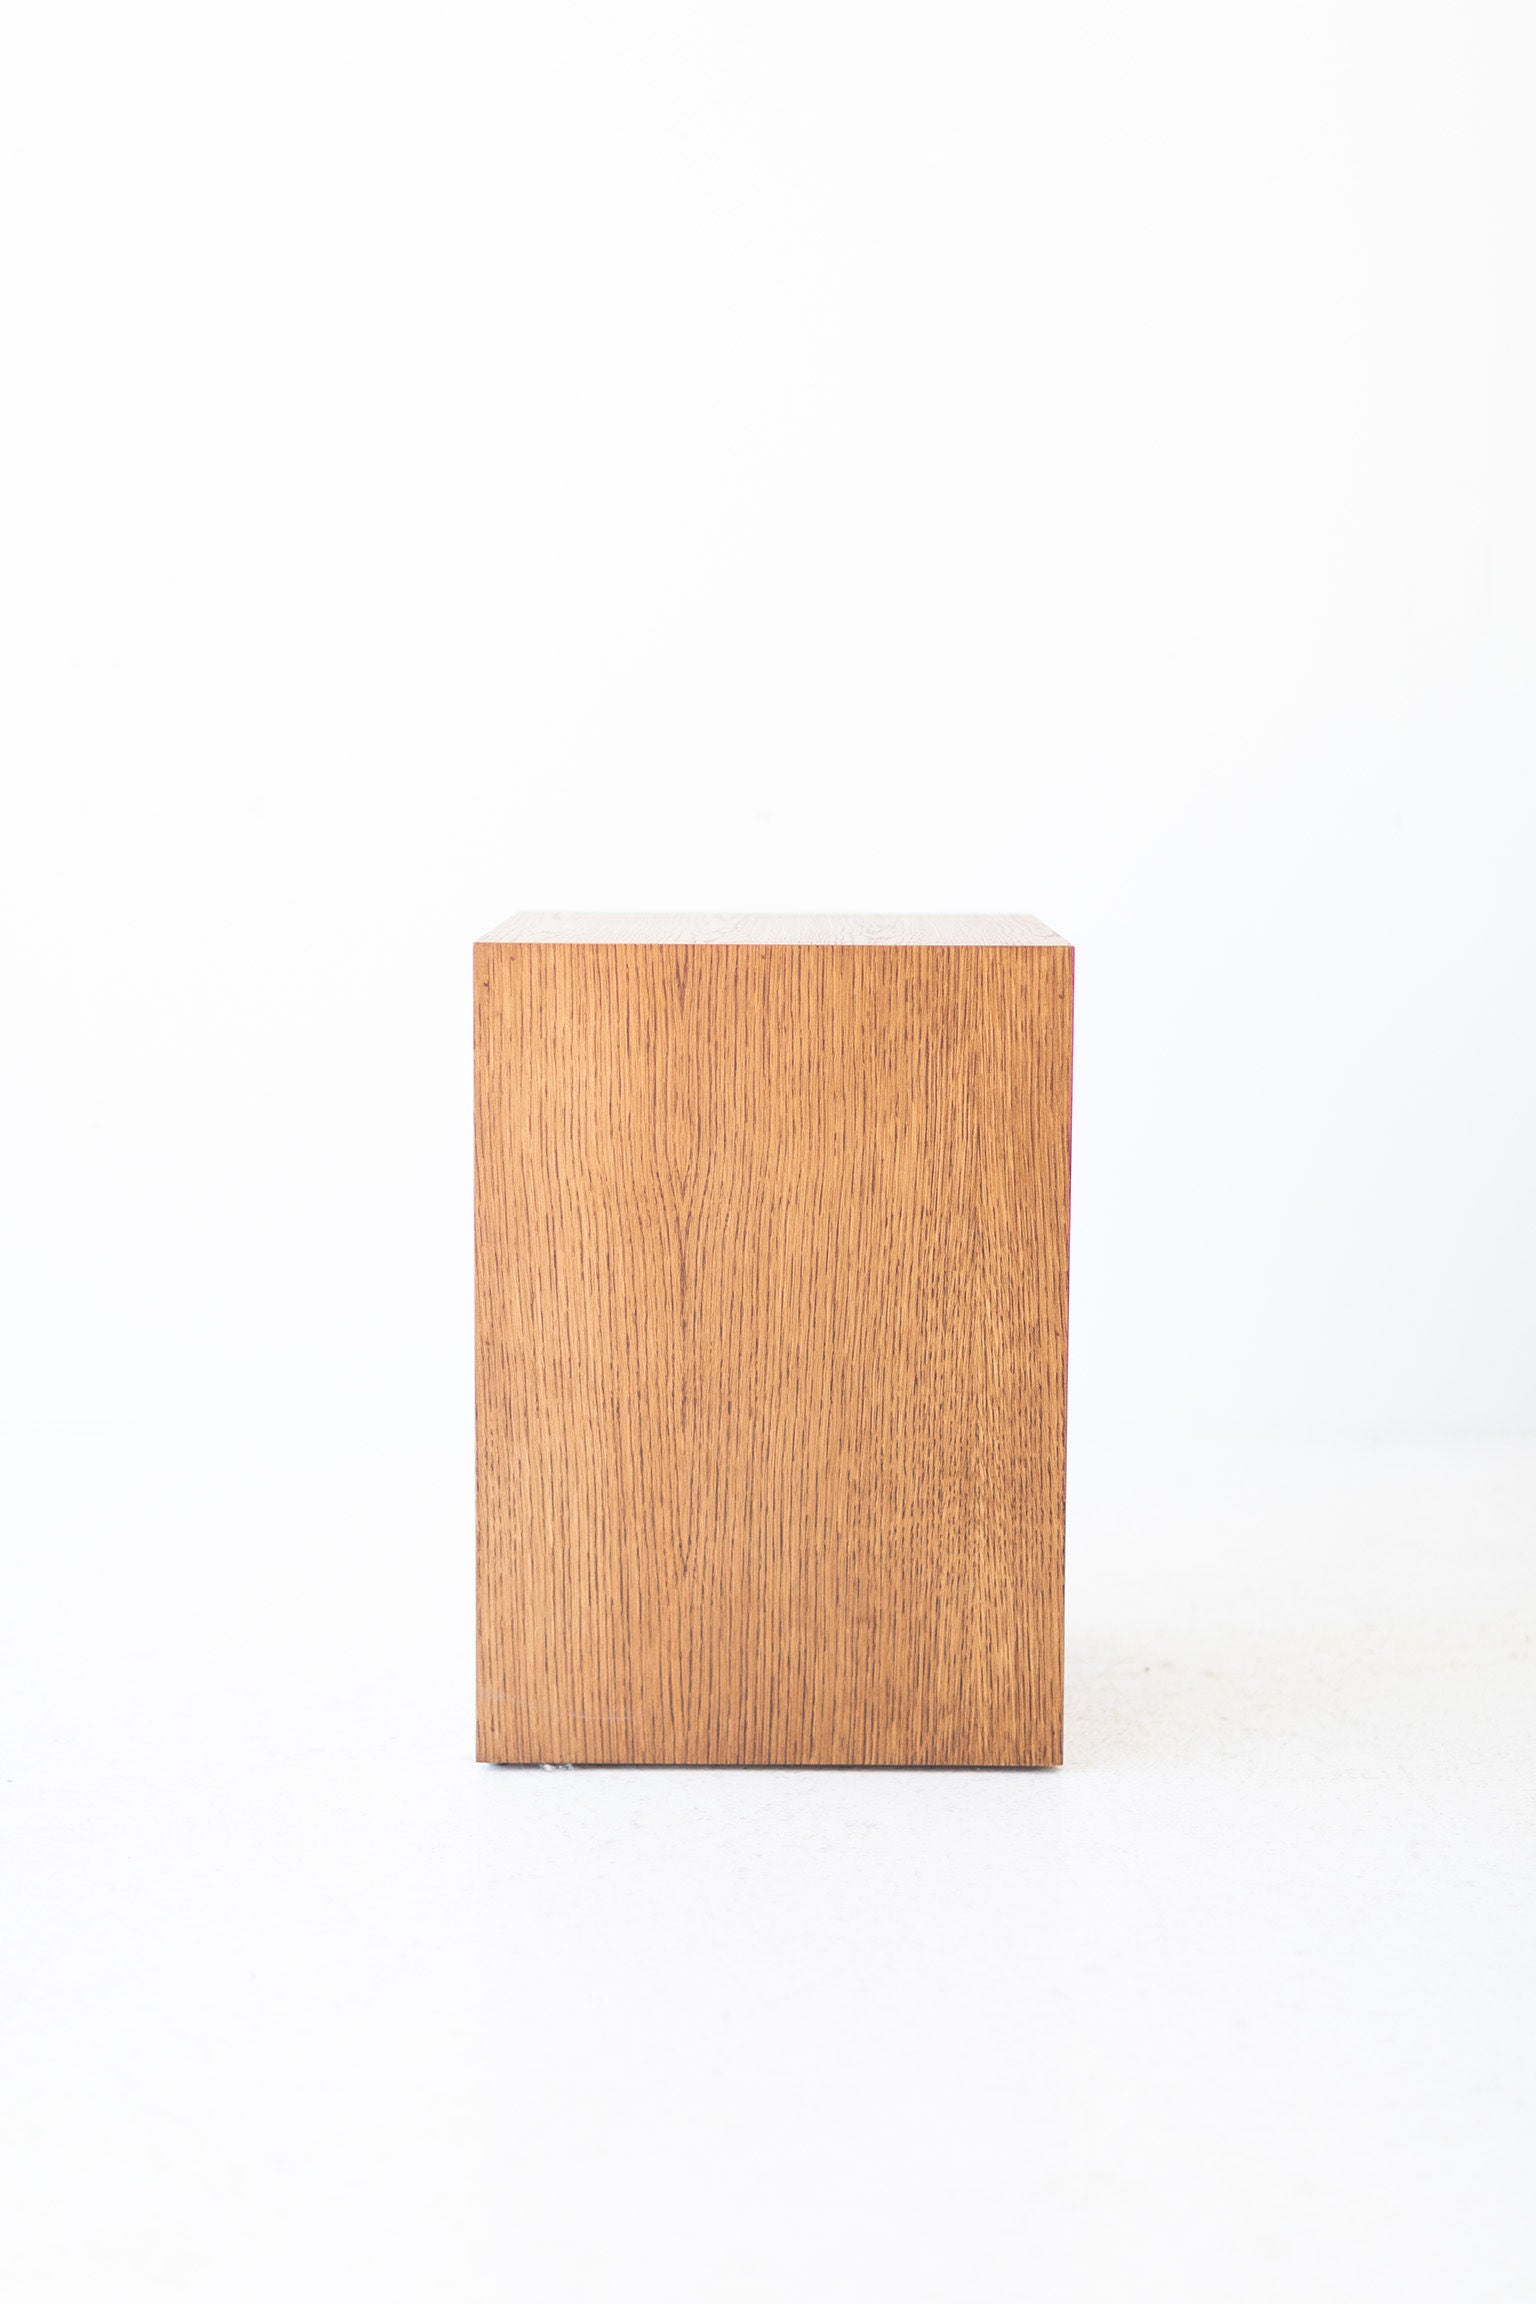 Modern-Wood-Side-Table-Oak-08